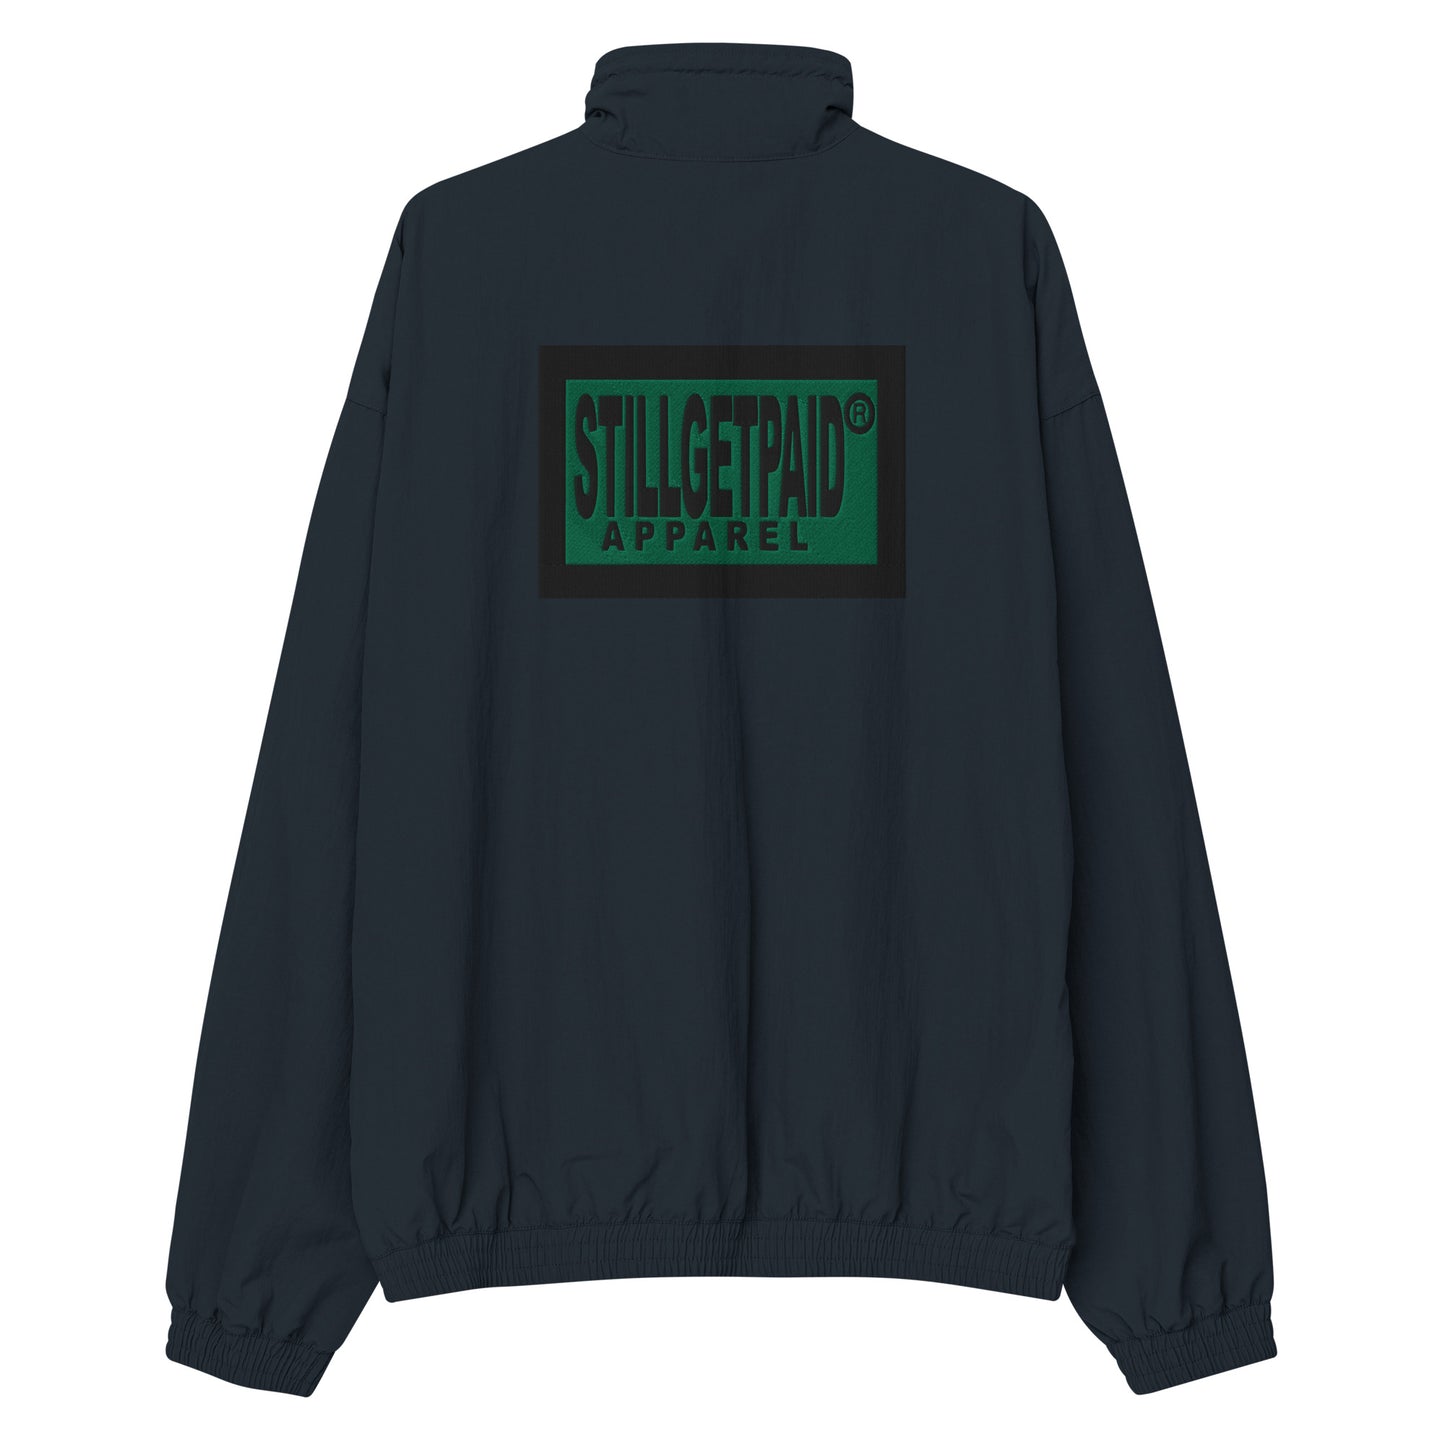 STILLGETPAID® APPAREL tracksuit jacket